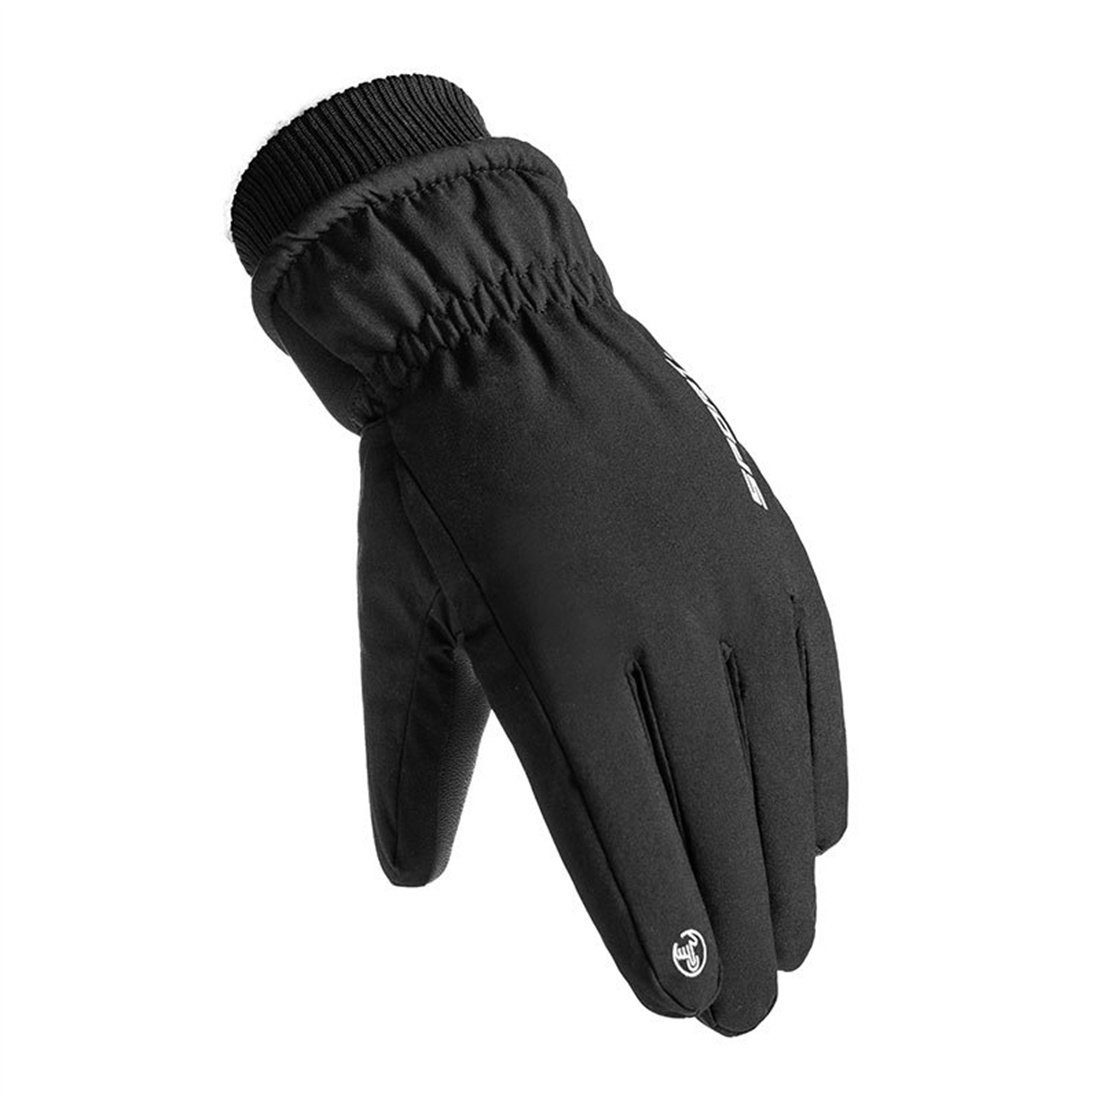 DÖRÖY Skihandschuhe Winddichte mitTouchscreen,unisex Schwarz Handschuhe Winter-Skihandschuhe,warme